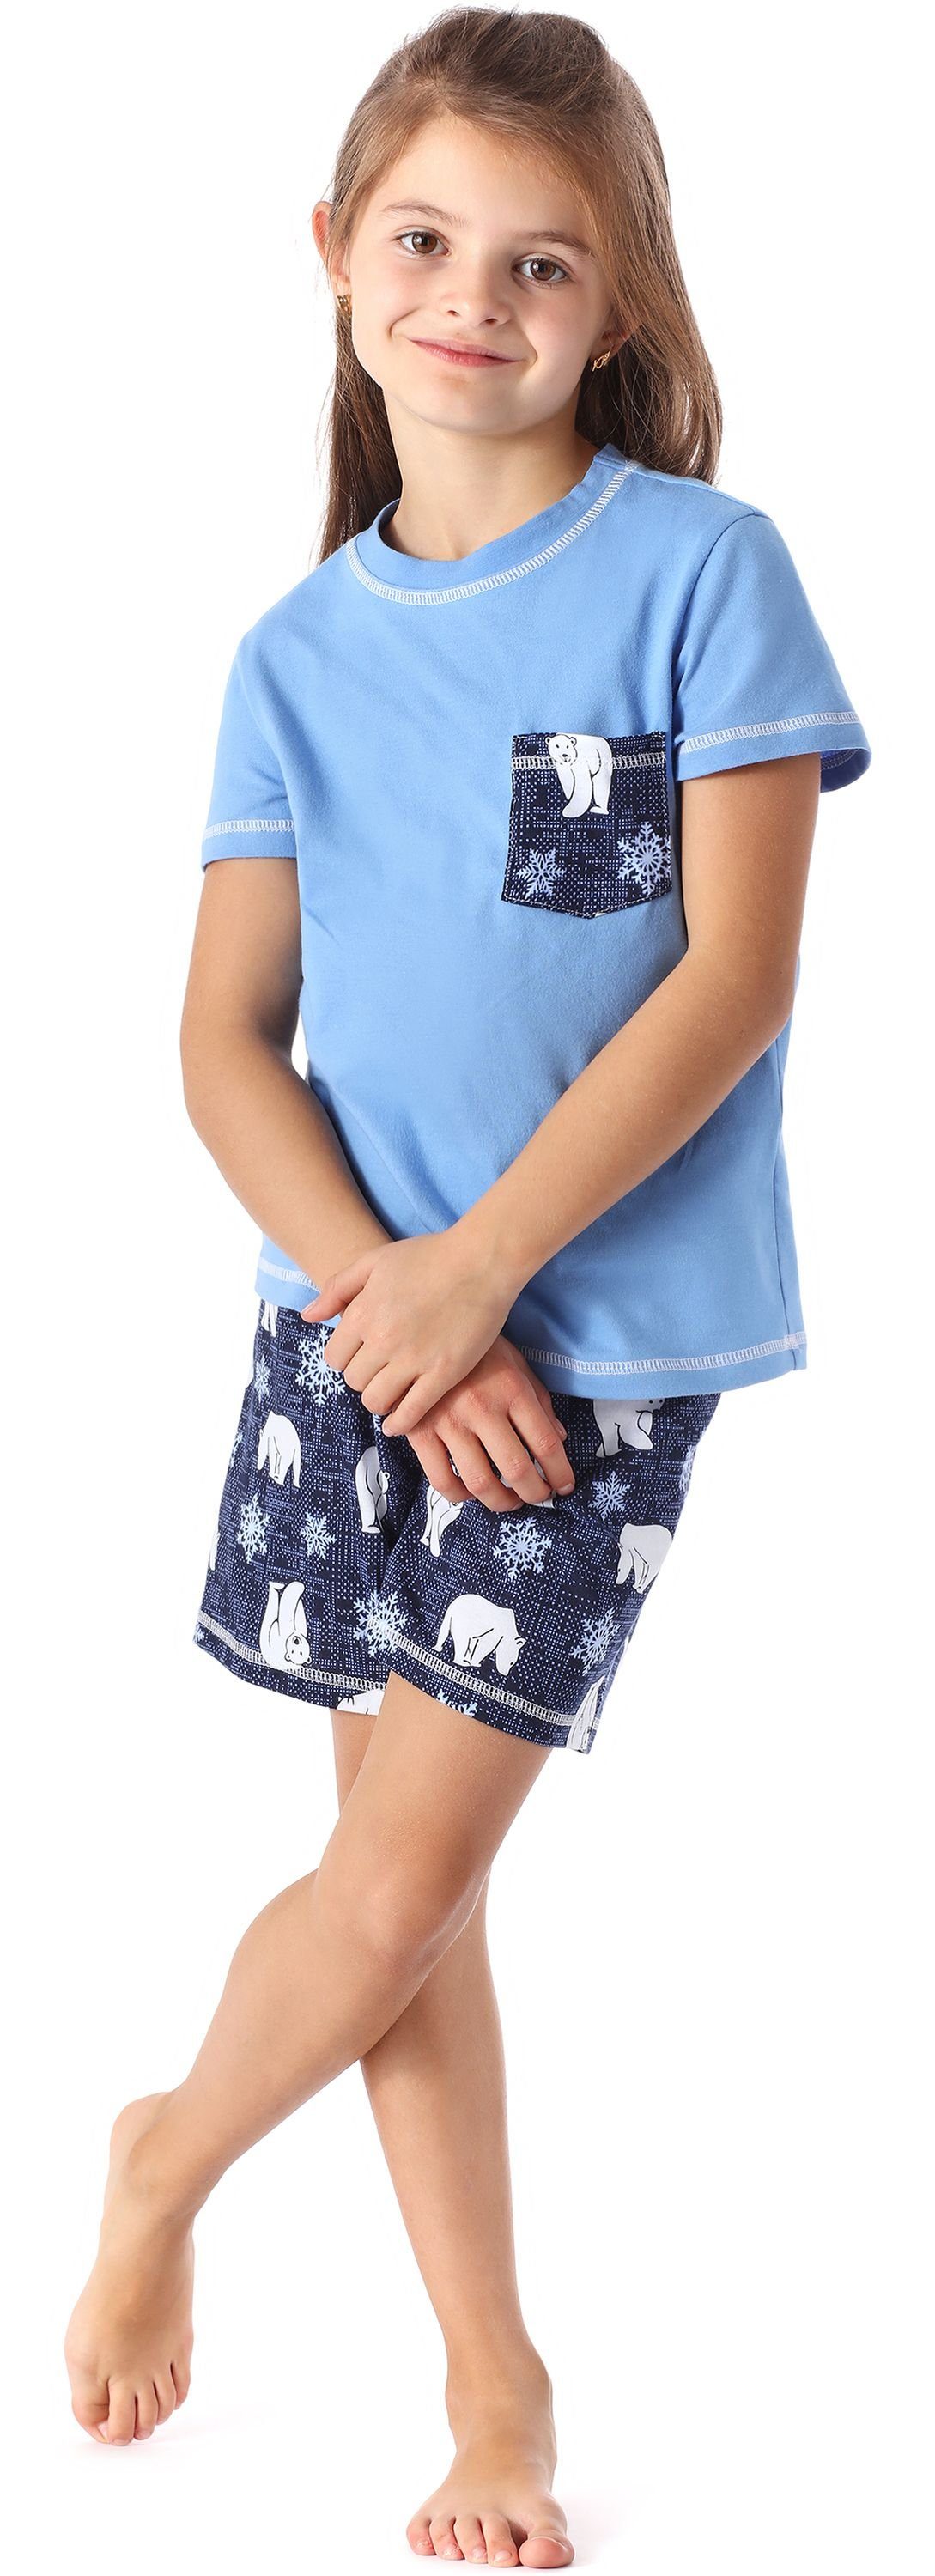 MS10-292 Schlafanzüge Baumwolle aus Pyjama Mädchen Style Schlafanzug Blau/Bär Set Kurz Merry